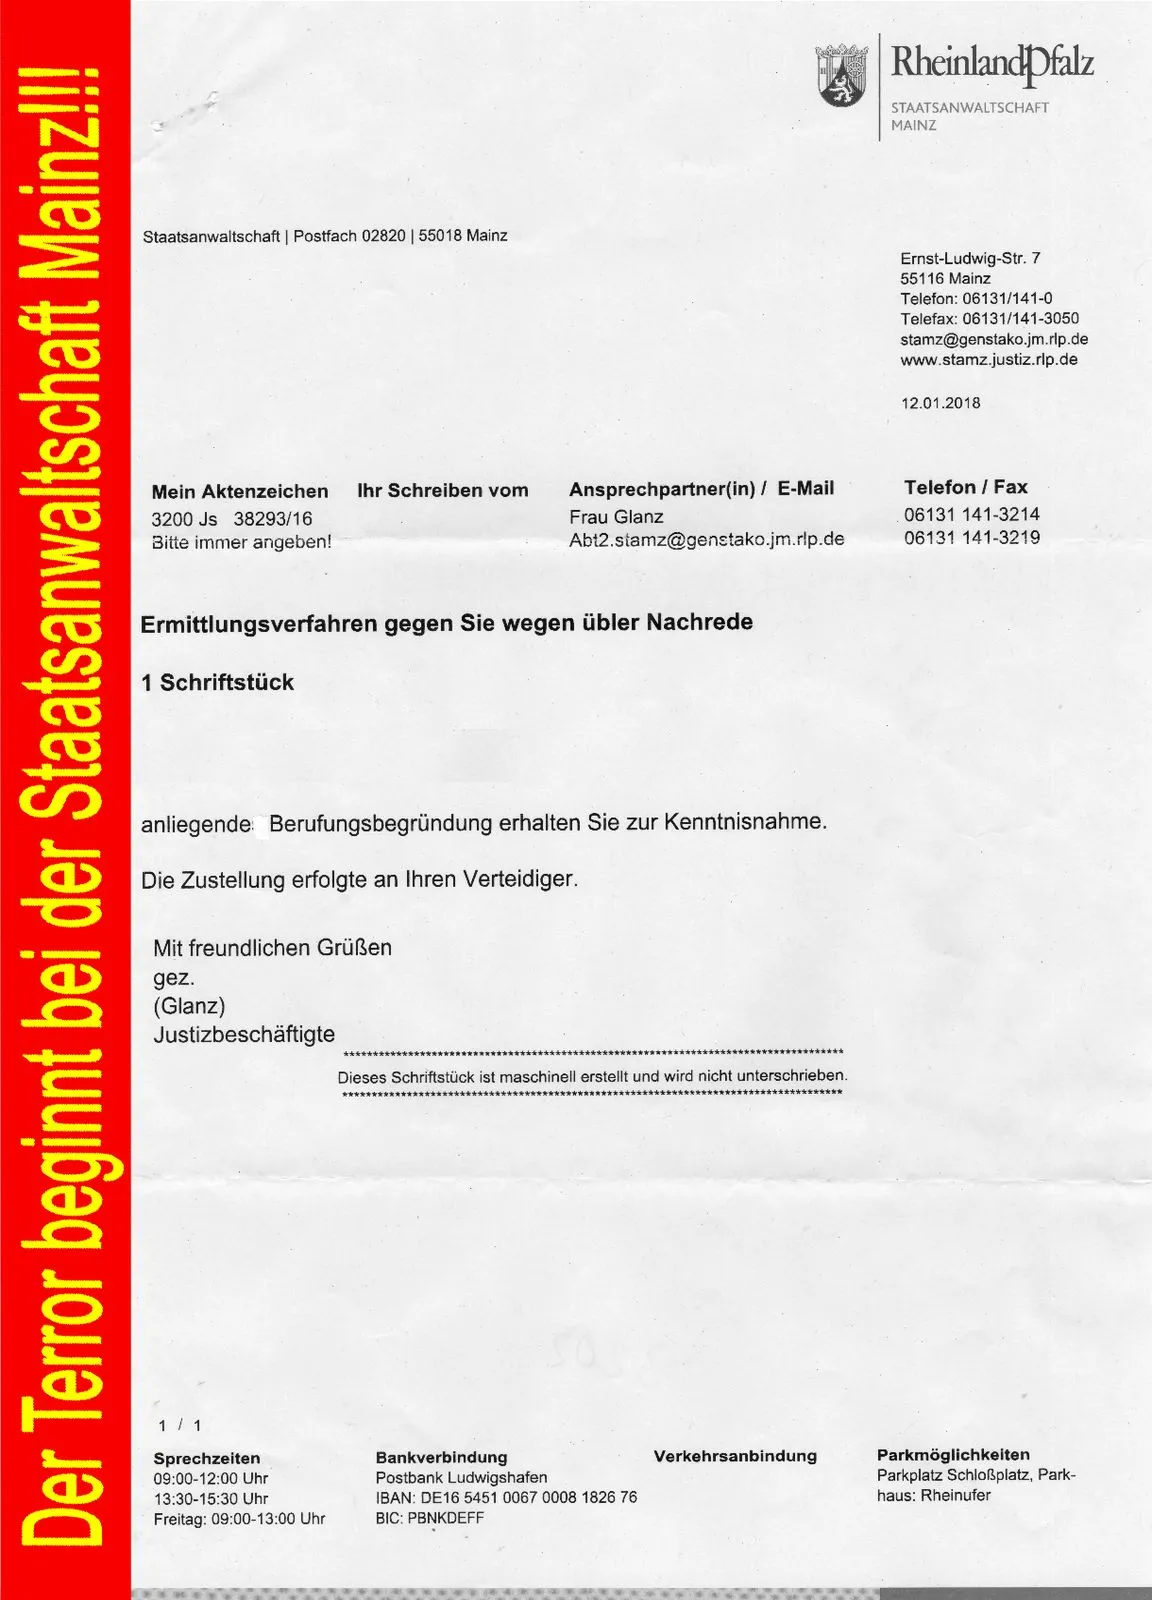 Unzulässige Sperrberufung der Staatsanwaltschaft Mainz Rainer Hofius Barbara Euler Nadine Moormann Alexandra Ernst ein Akt der Rechtsbeugung-01